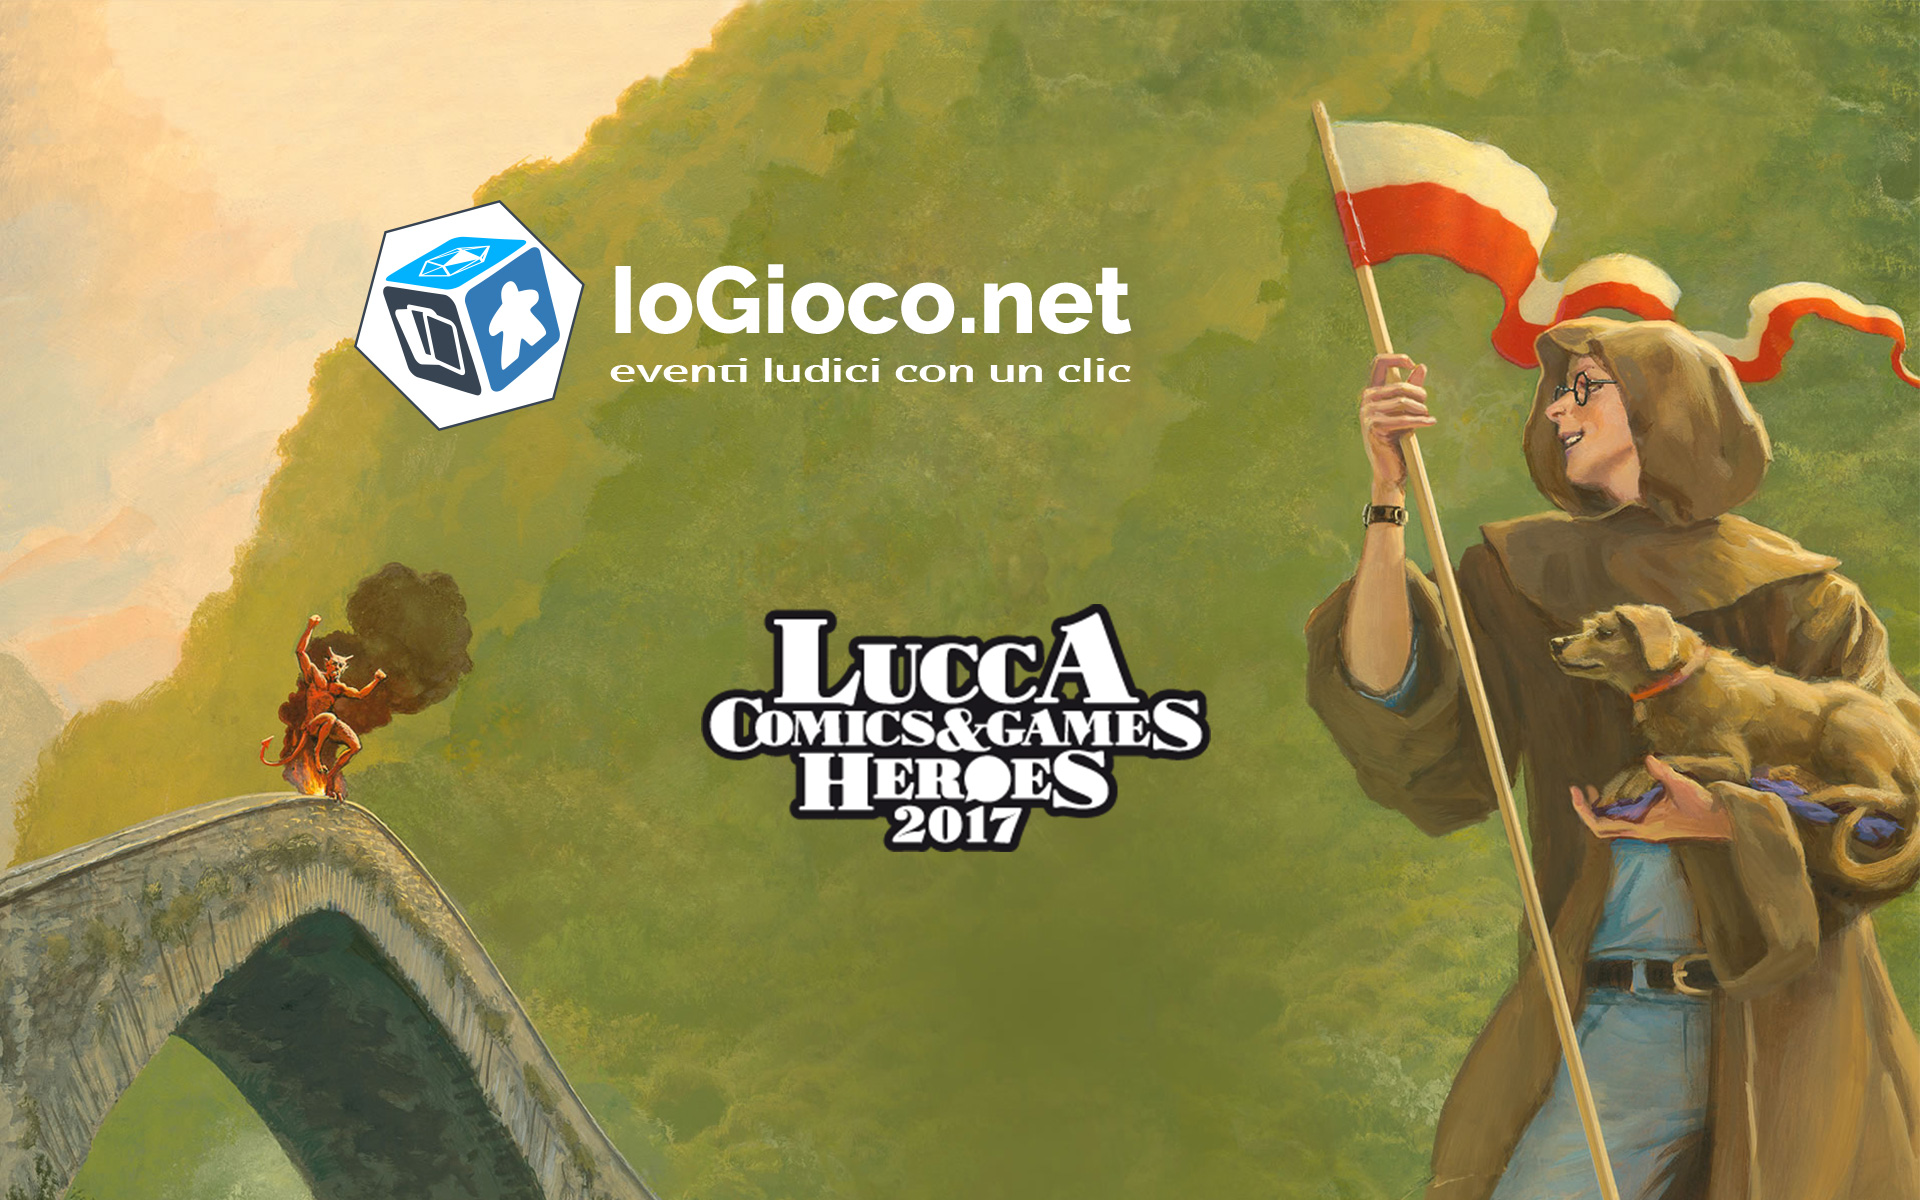 "Pronti per Lucca Comics & Games 2017?"